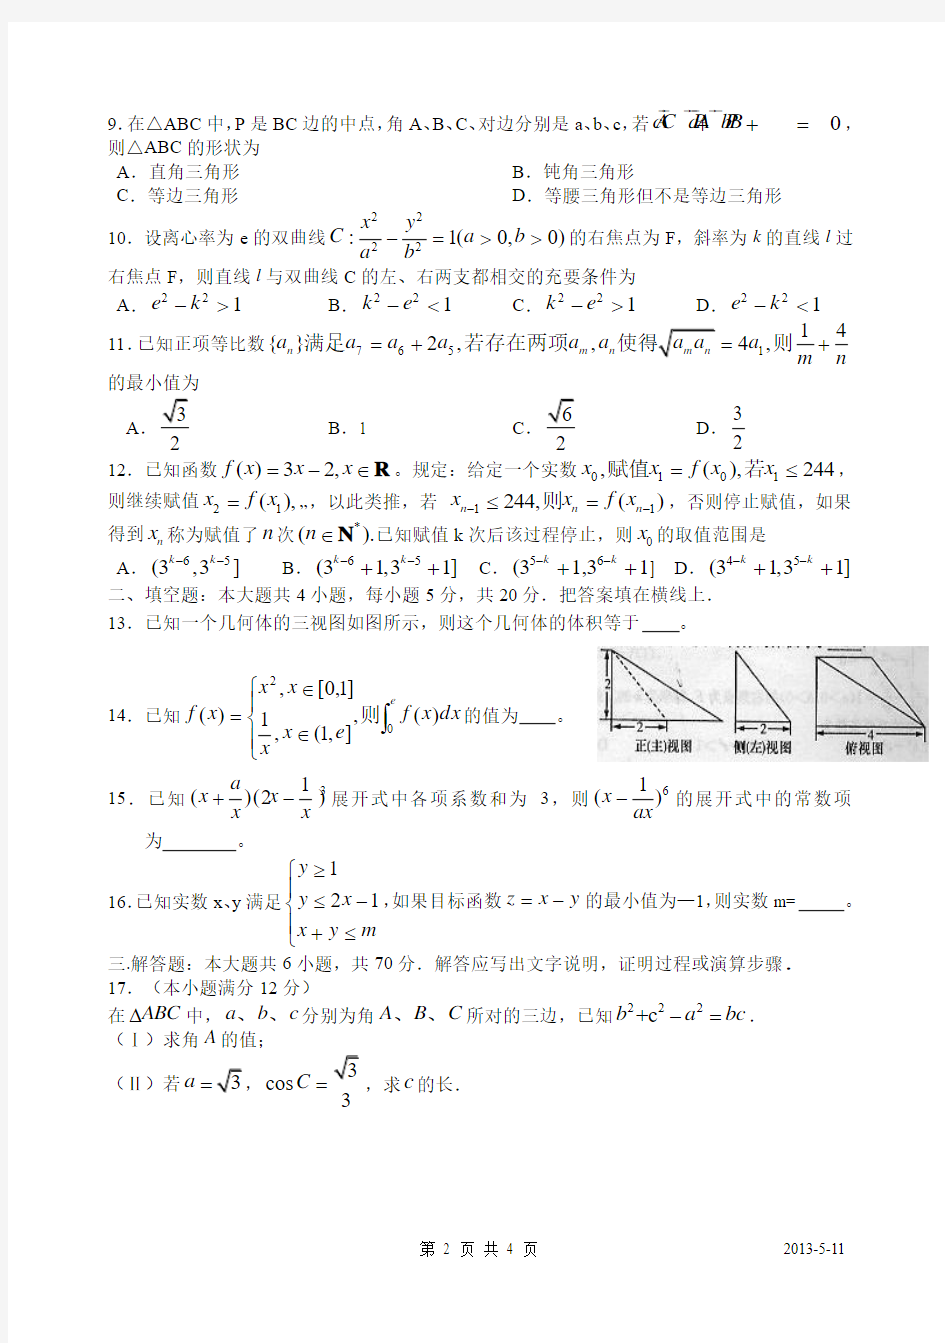 遵义县第一中学2012-2013-1高三数学综合测试.(一)